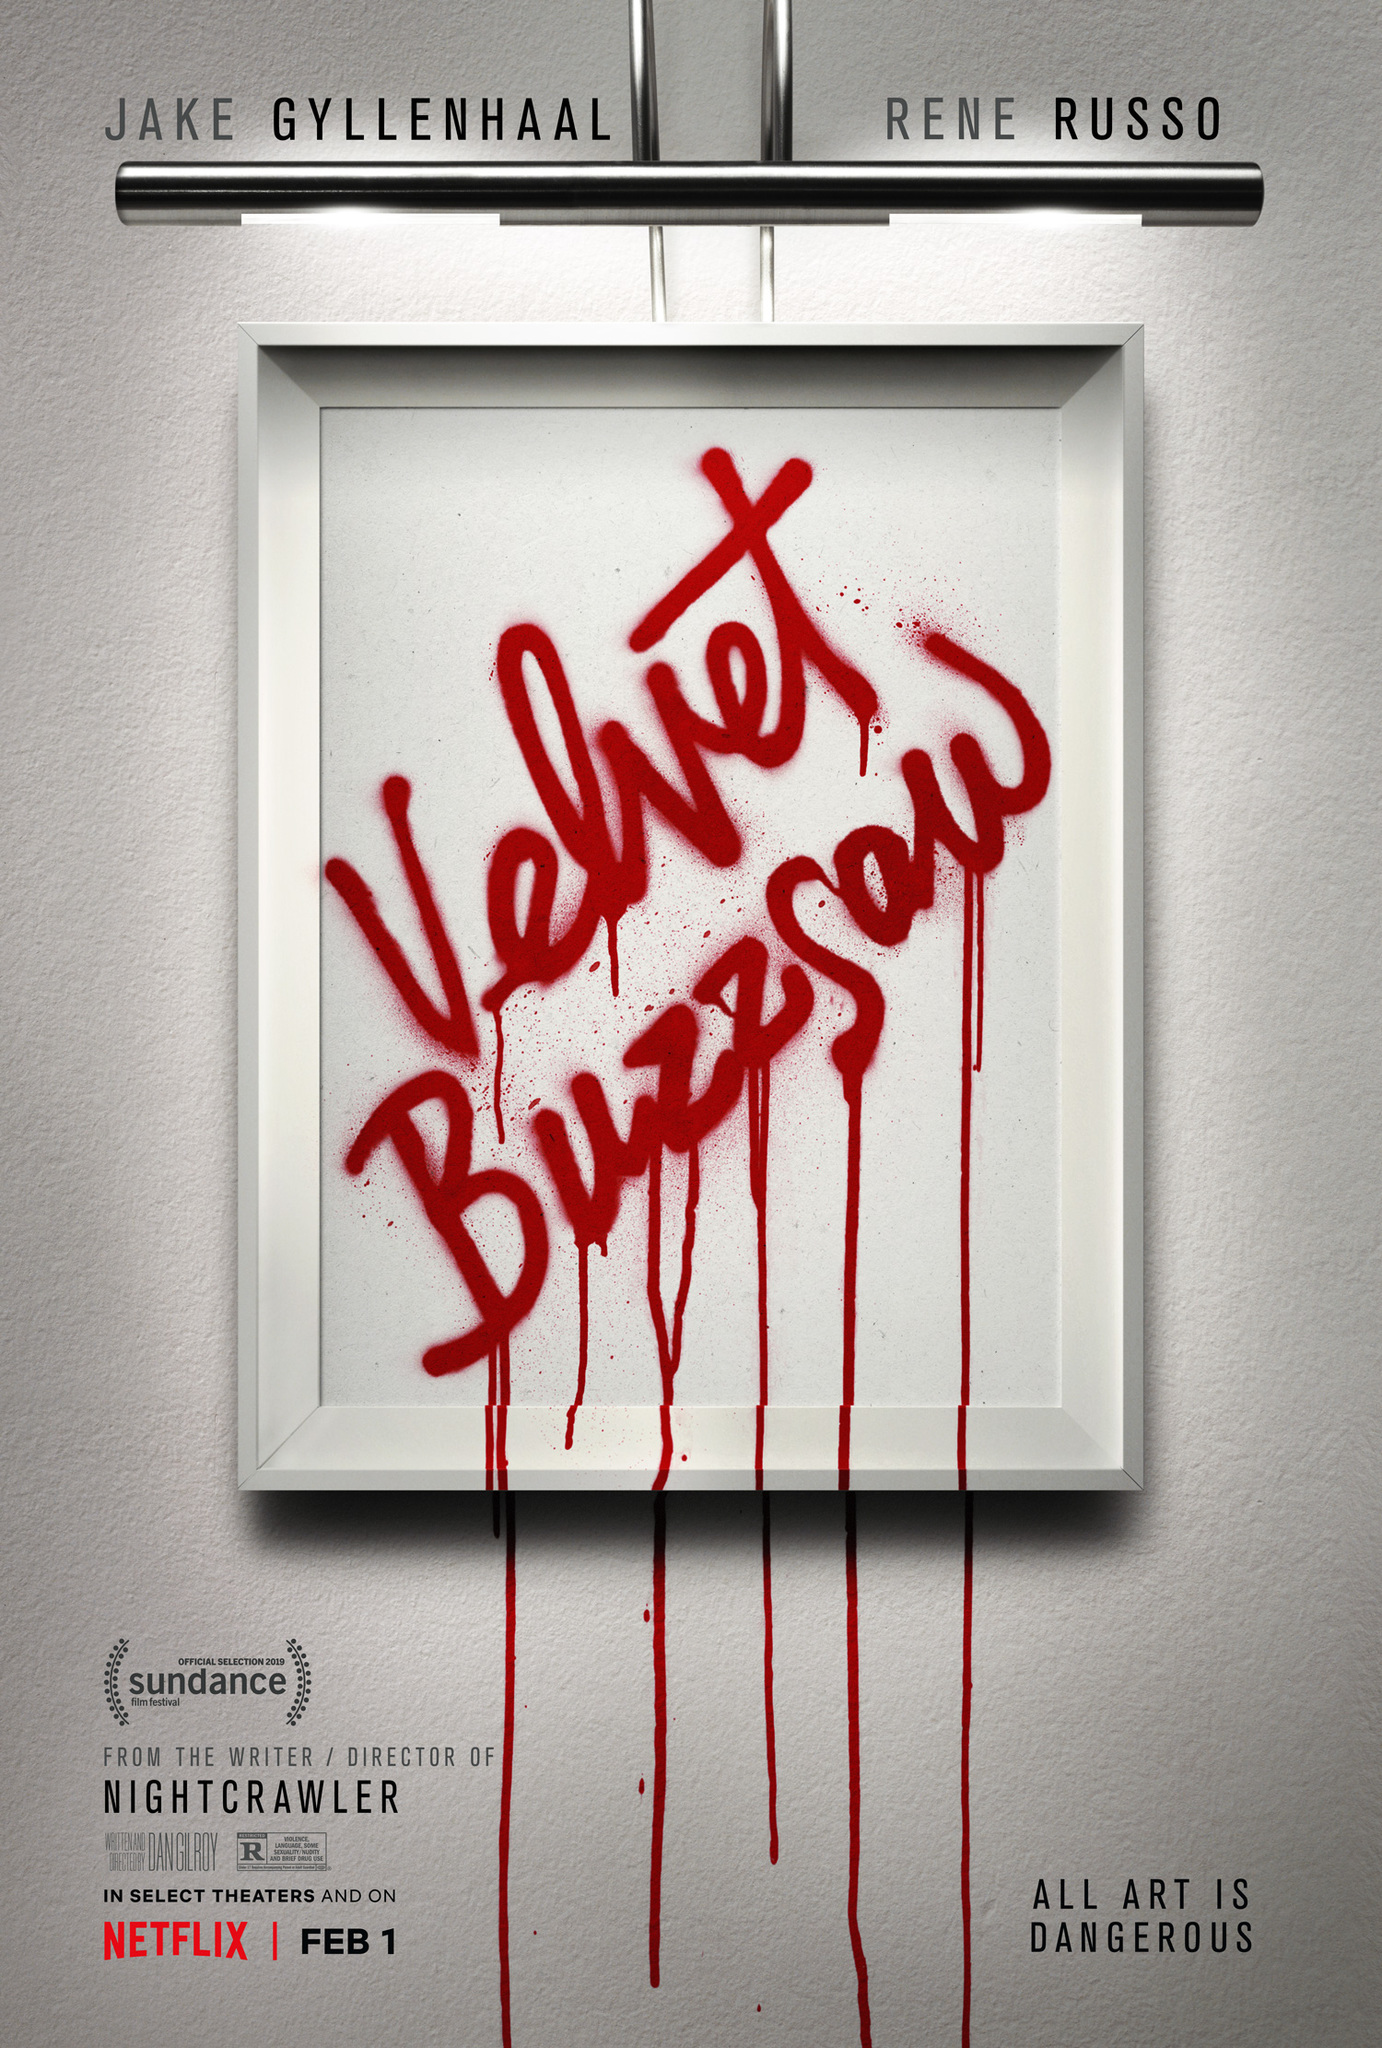 Velvet Buzzsaw (2019) ศิลปะเลือด Jake Gyllenhaal